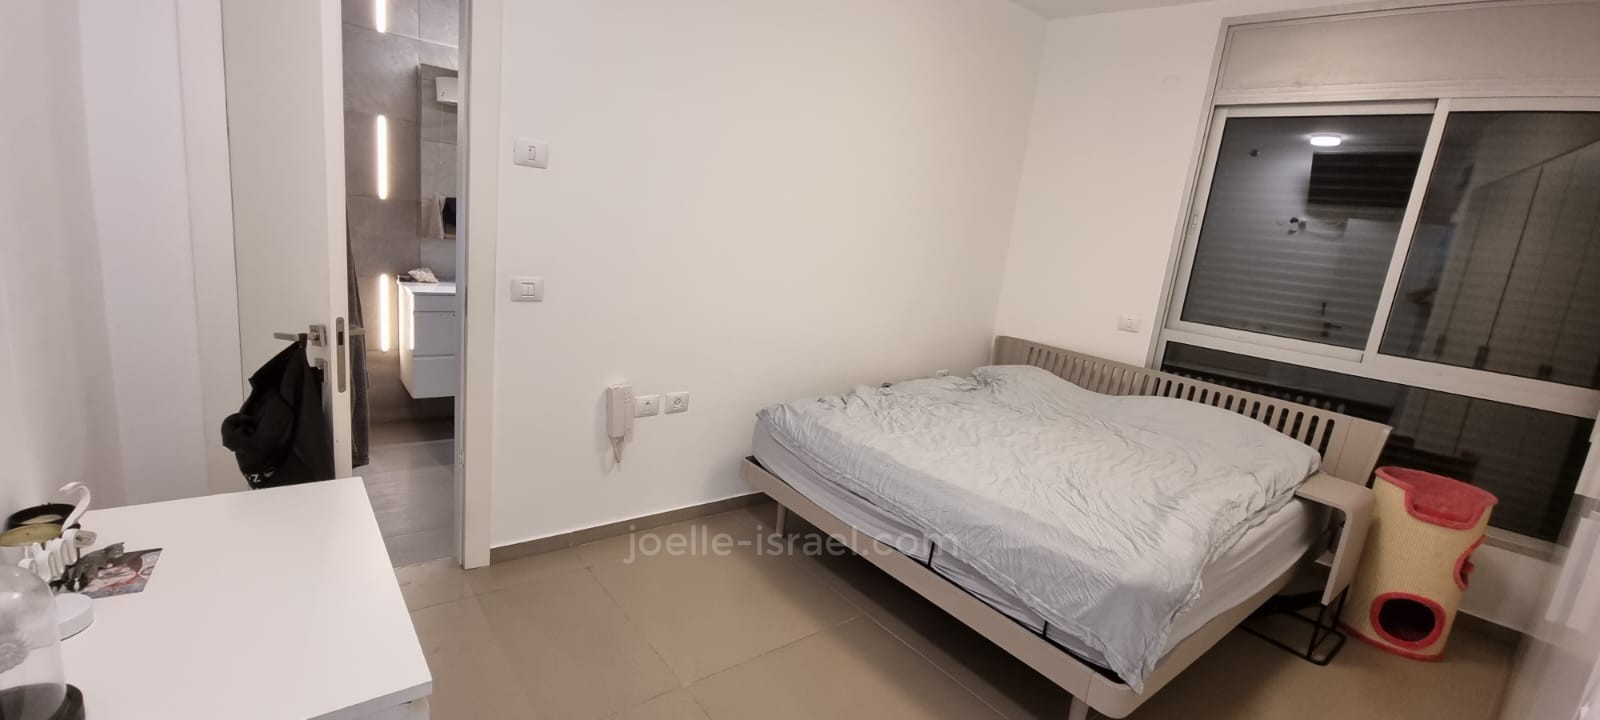 Appartement 4 pièces Netanya Nat600 316-IBL-1548